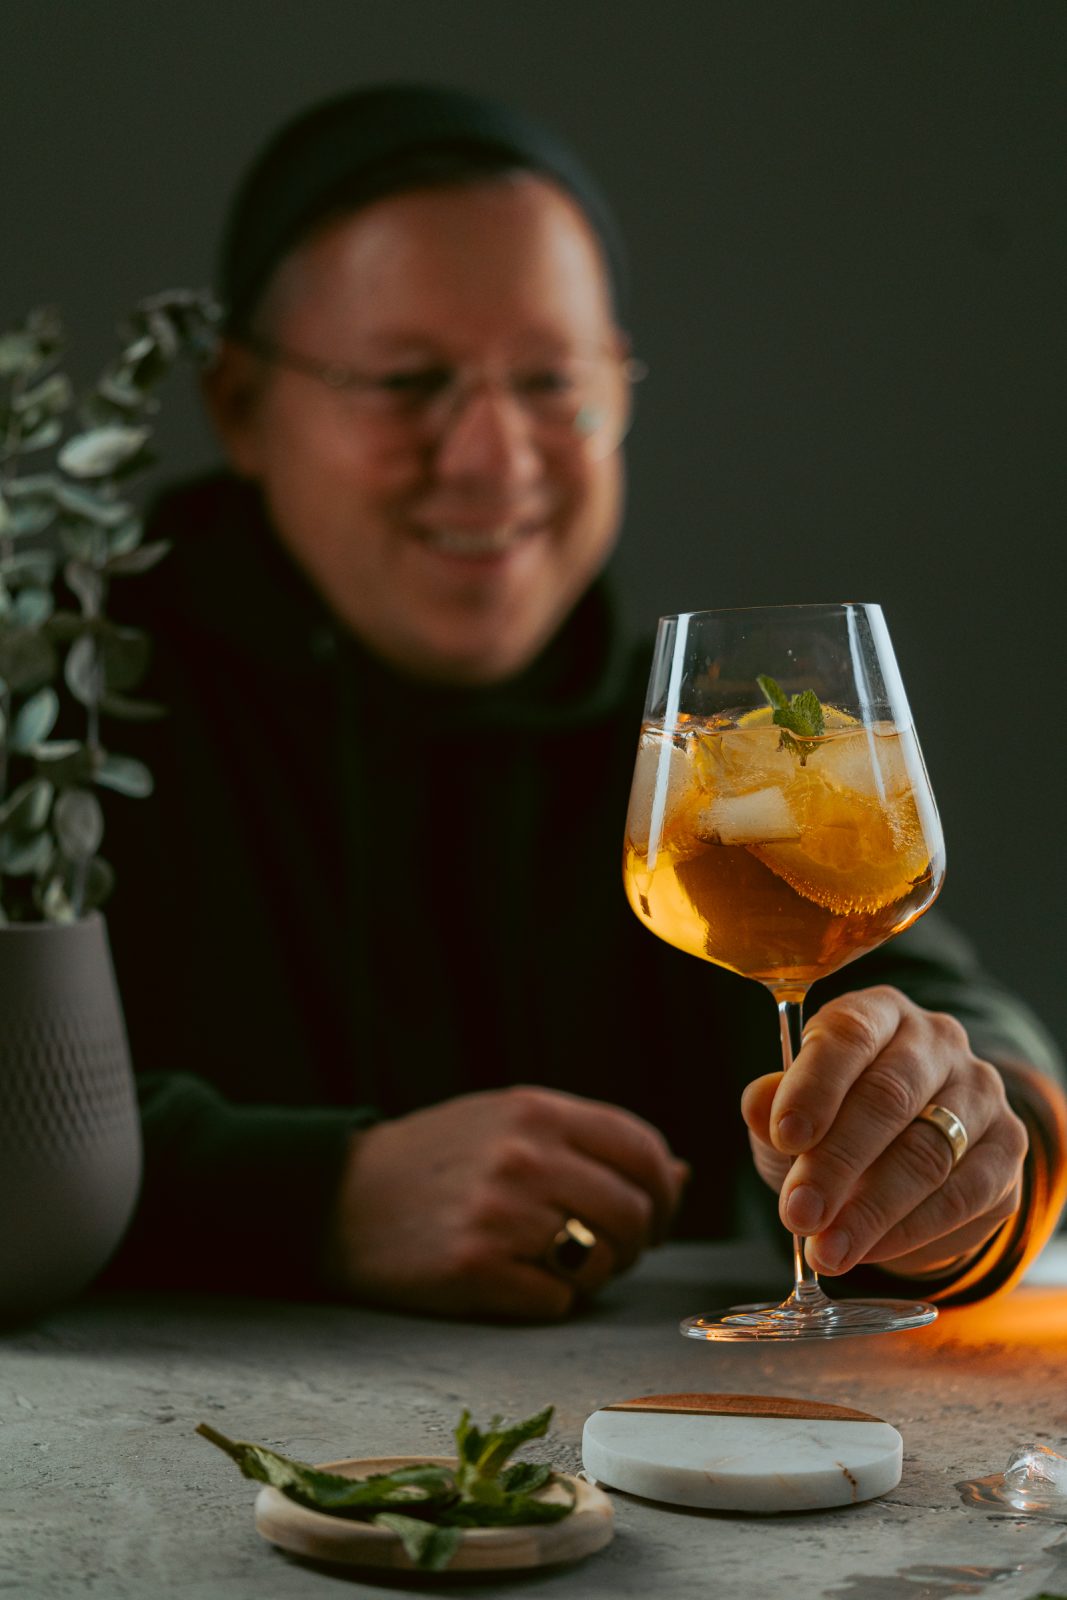 Rezept anlässlich zum #DryJanuary - der Totally Peachless ist unser liebster alkoholfreier Drink! Lasst ihn euch und euren Gästen schmecken.